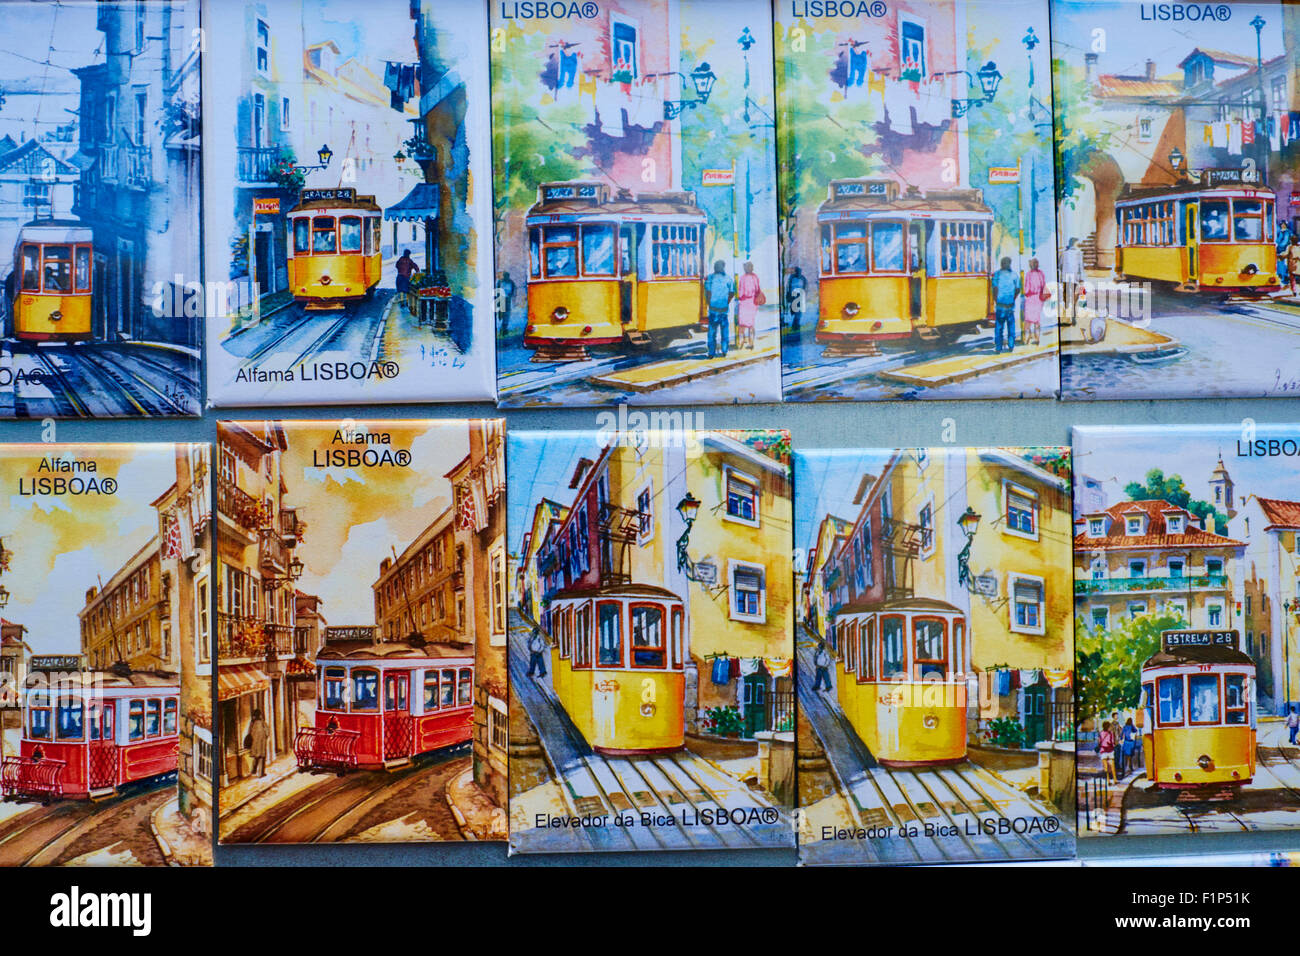 Portugal, Lisbon, souvenir shop, magnet Stock Photo